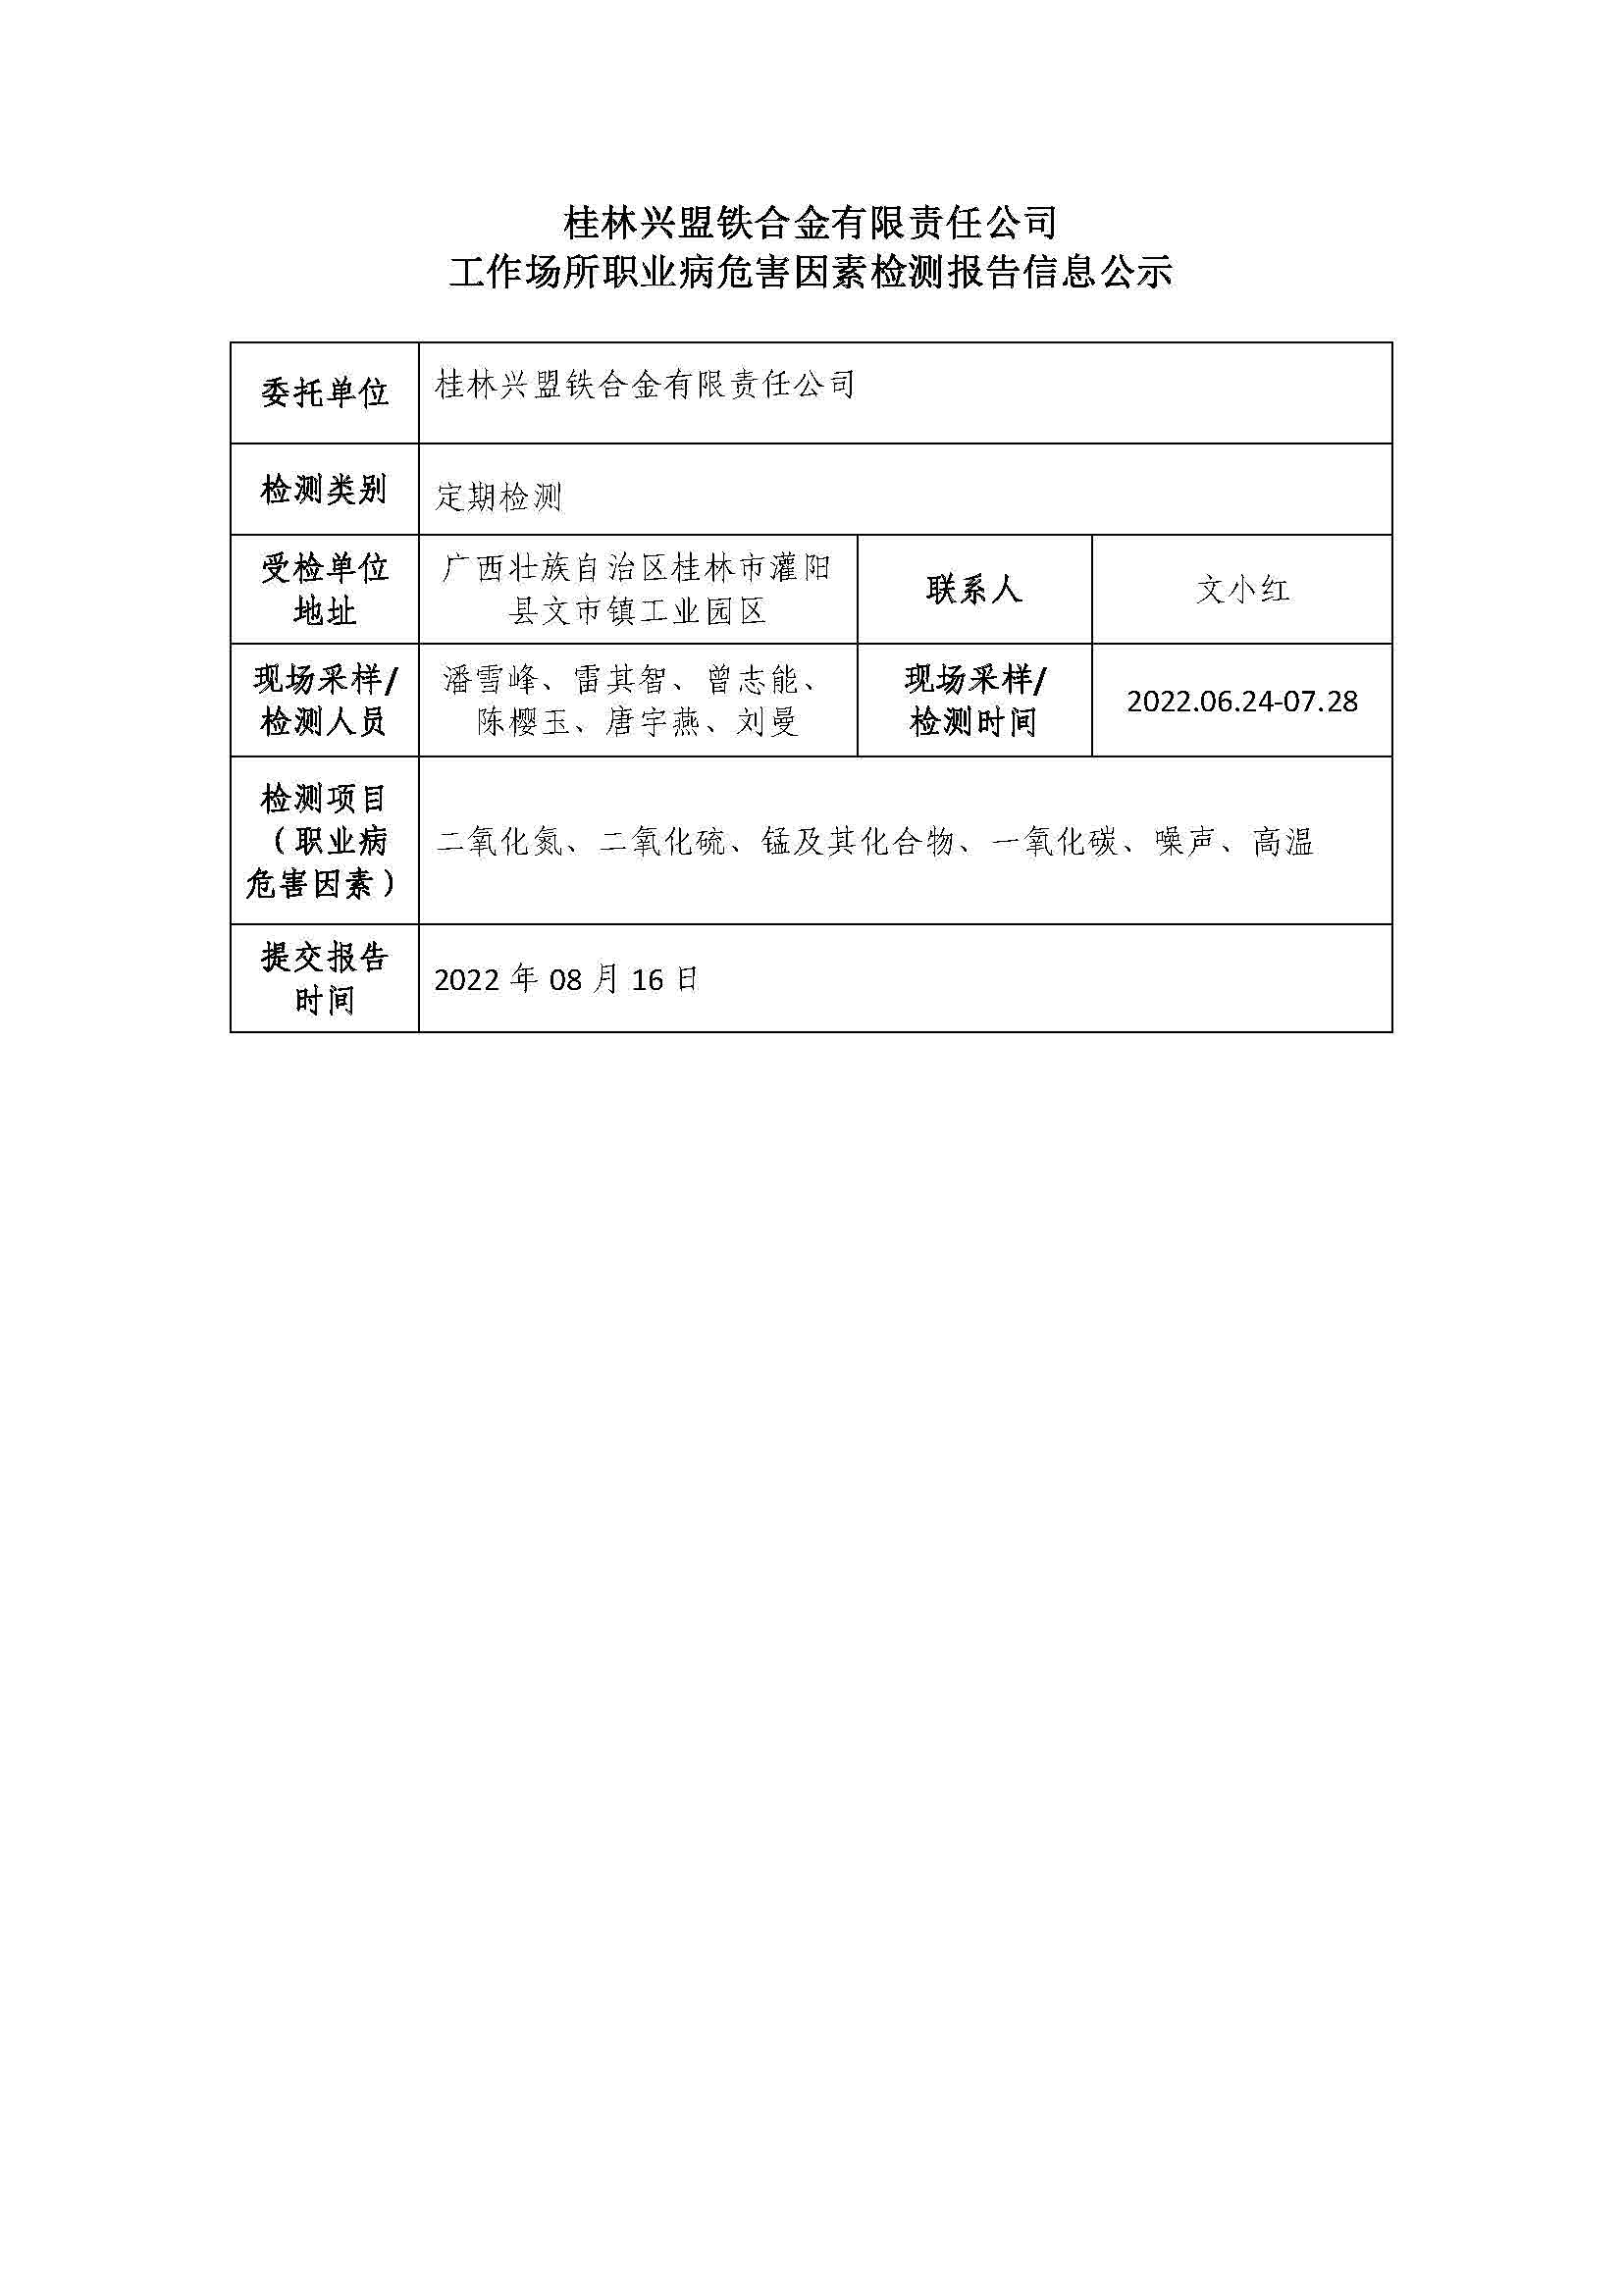 桂林兴盟铁合金有限责任公司工作场所职业病危害因素检测报告信息公示